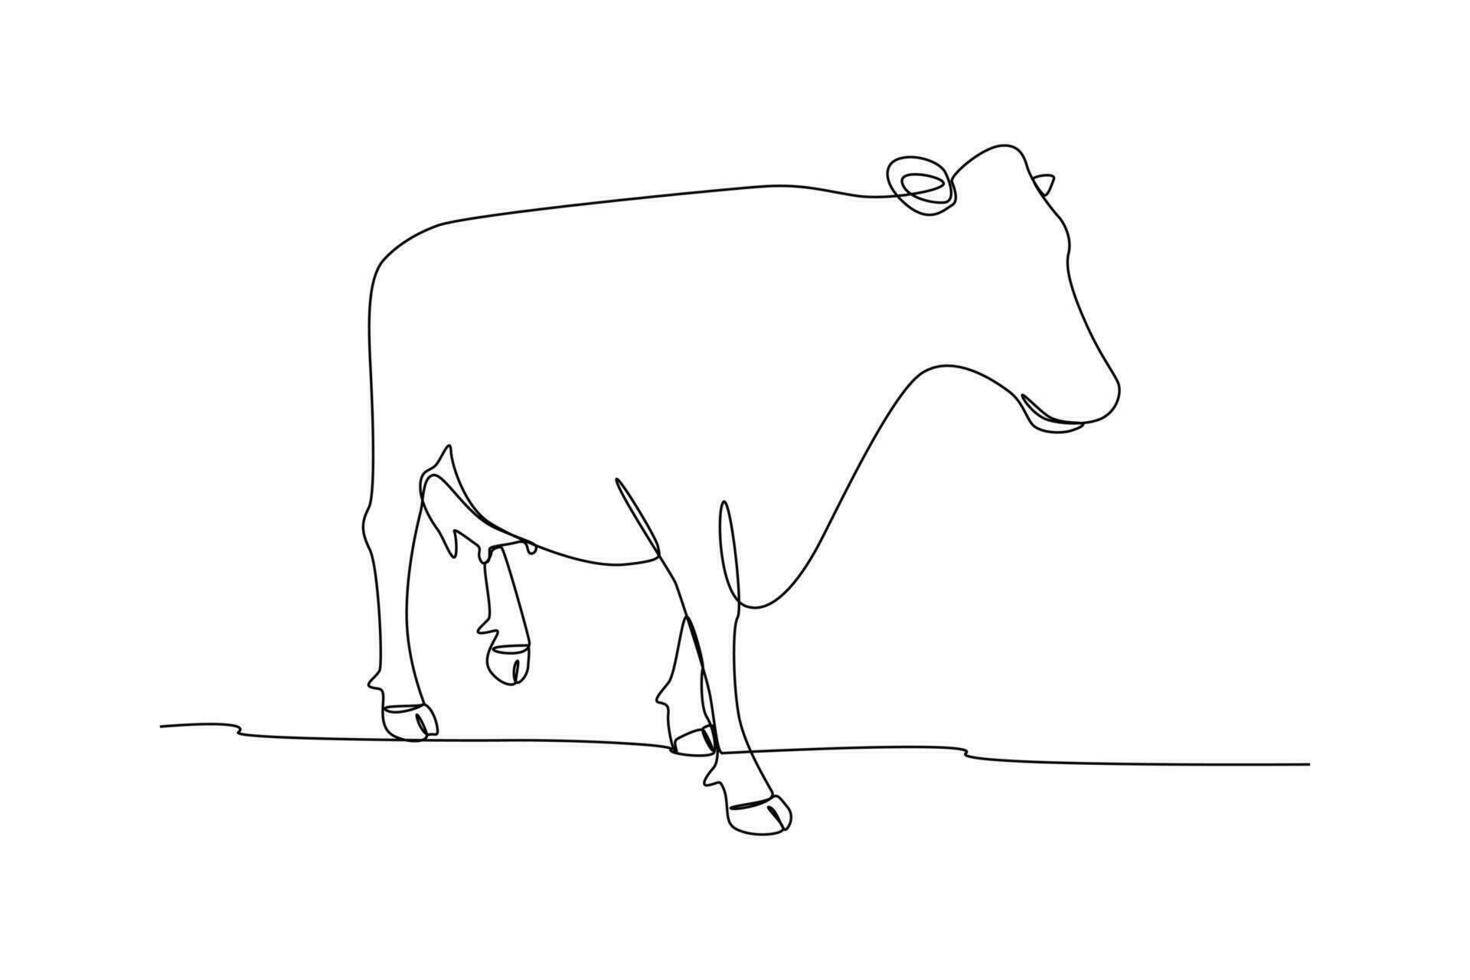 Single einer Linie Zeichnung Säugetier Tier Konzept. kontinuierlich Linie zeichnen Design Grafik Vektor Illustration.